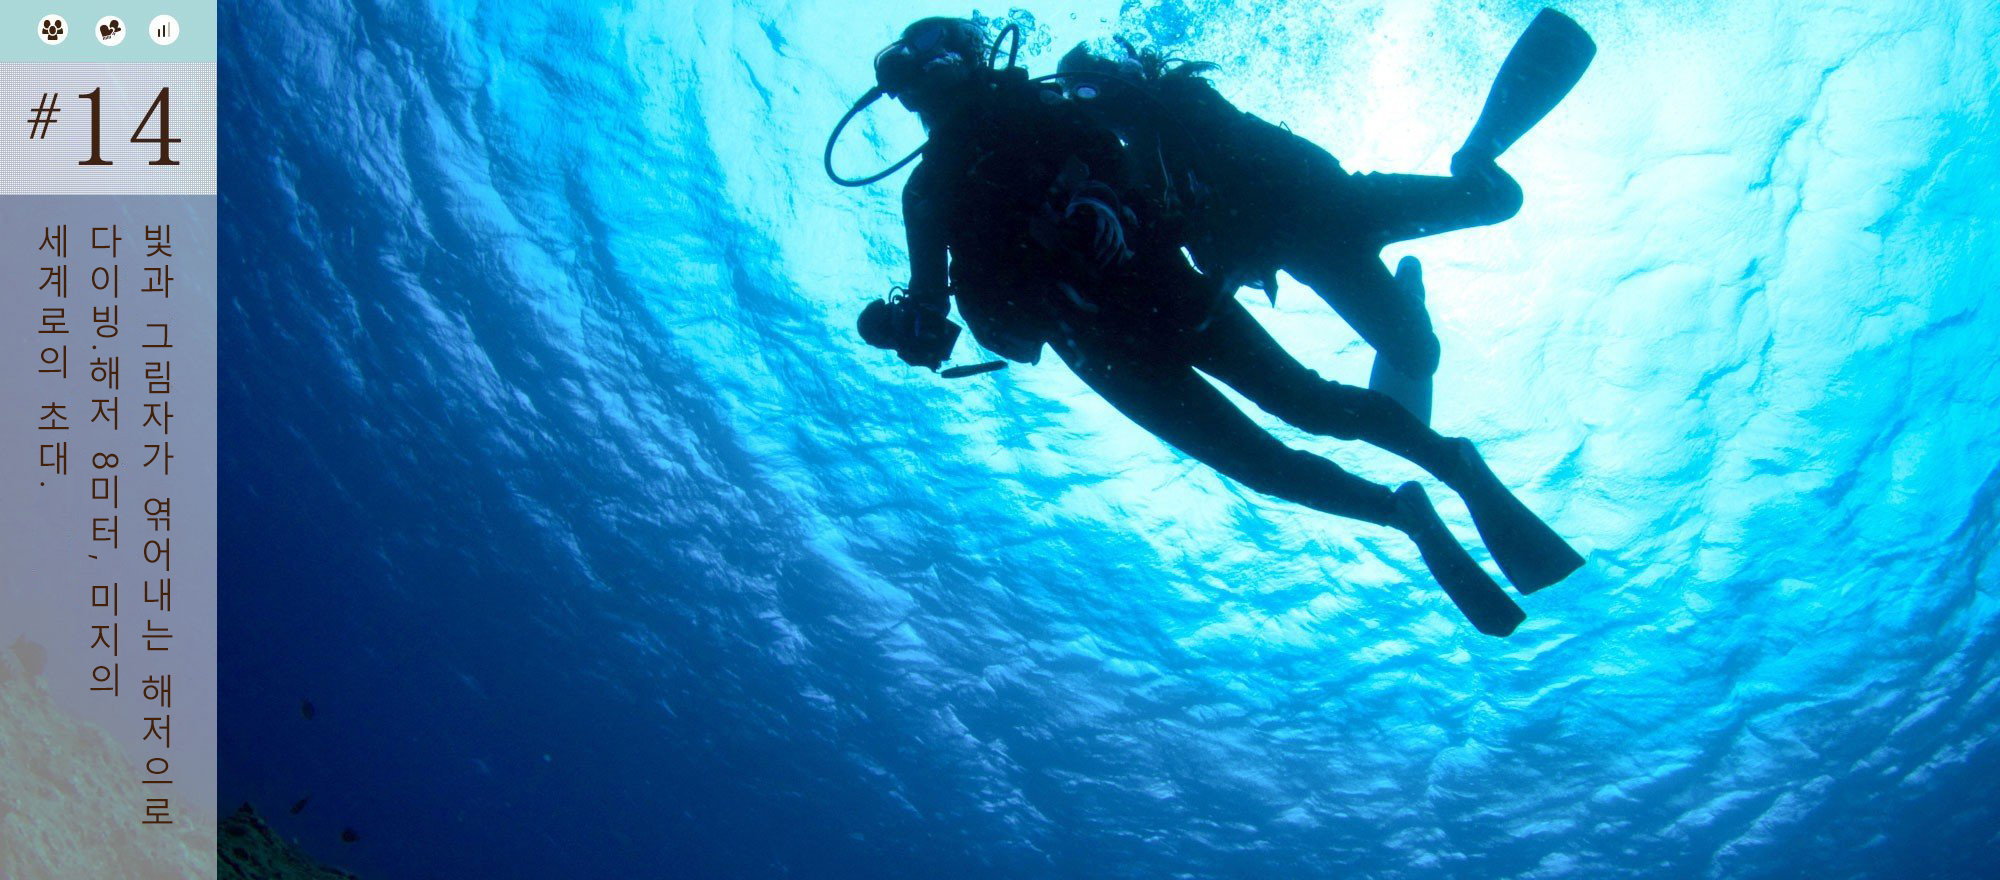 빛과 그림자가 엮어내는 해저으로 다이빙.해저 8미터, 미지의 세계로의 초대.